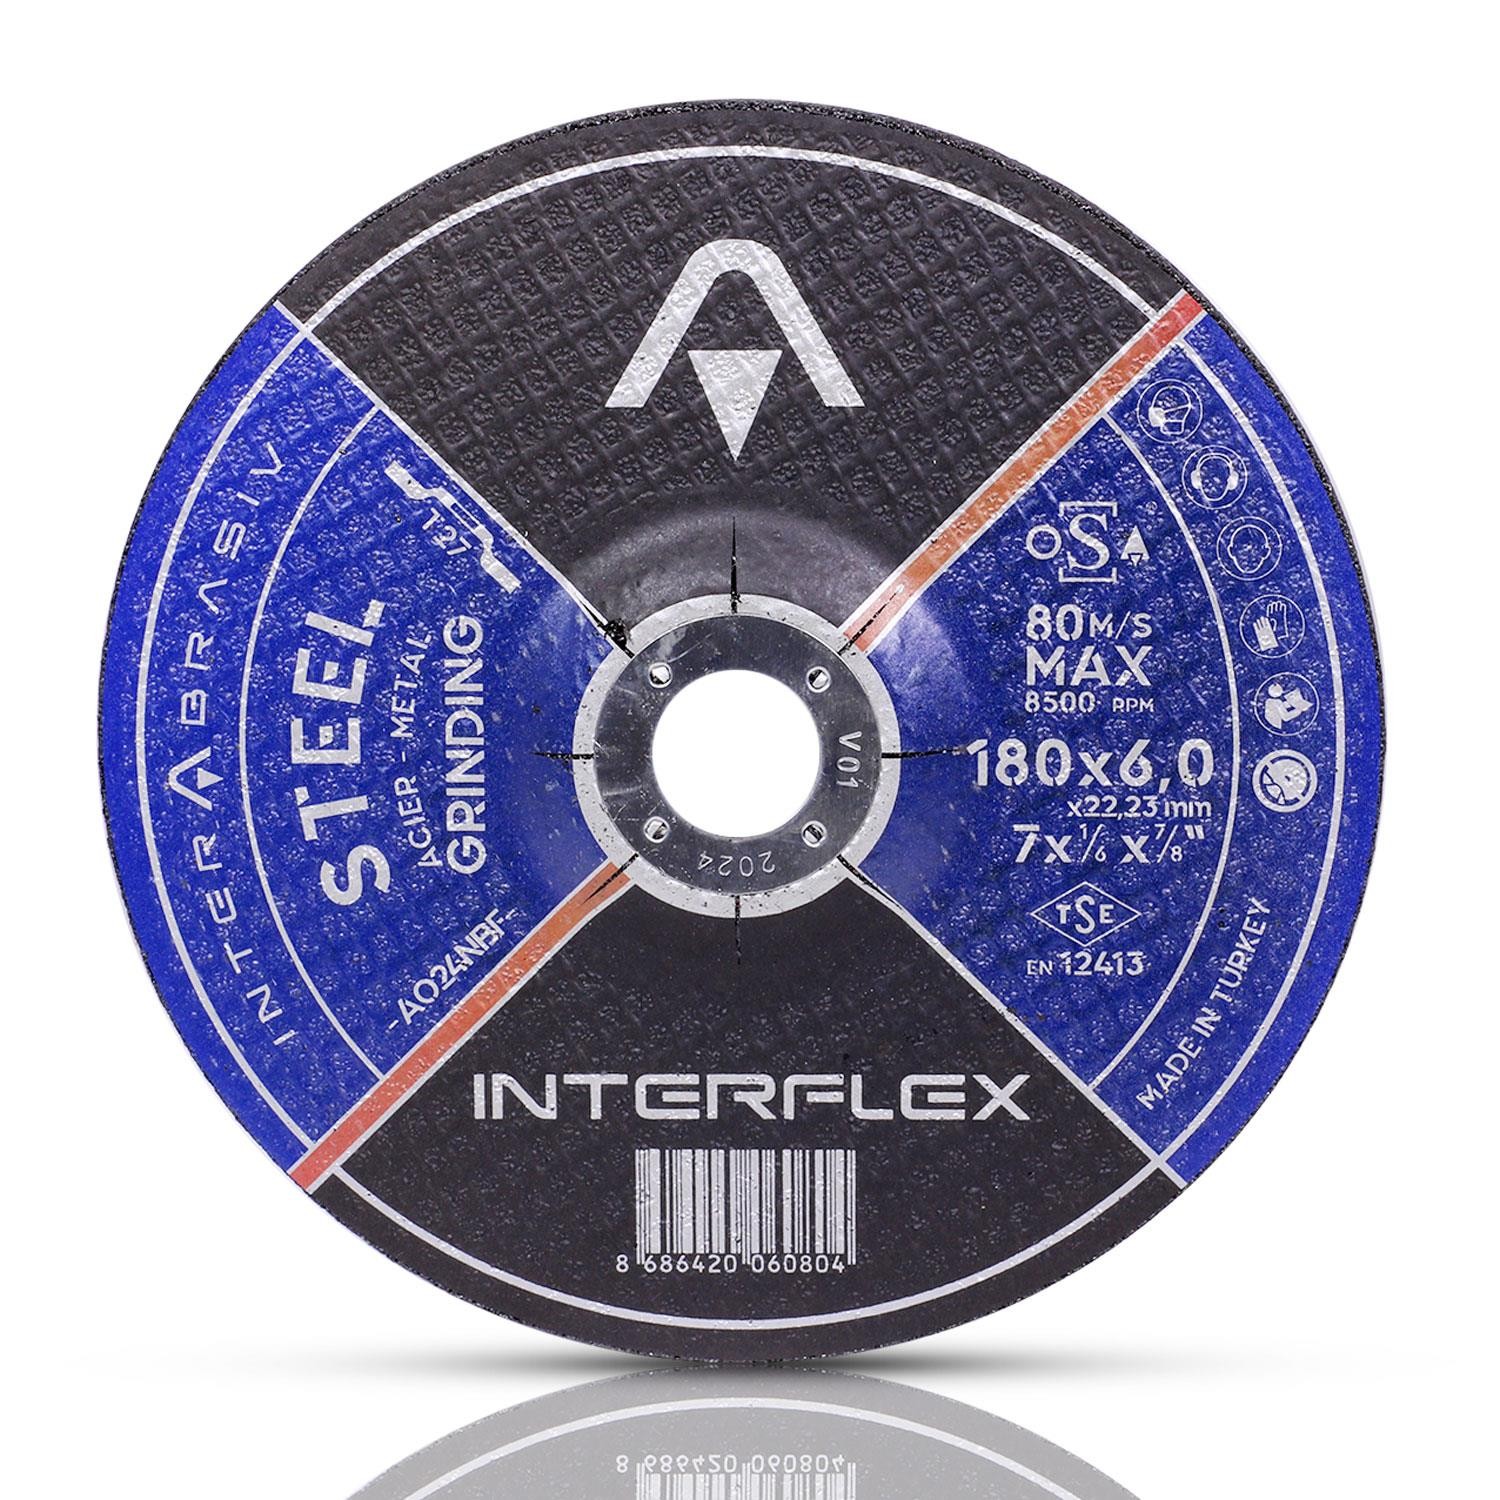 İnterflex Metal Taşlama Taş Disk 180x6 Bombeli